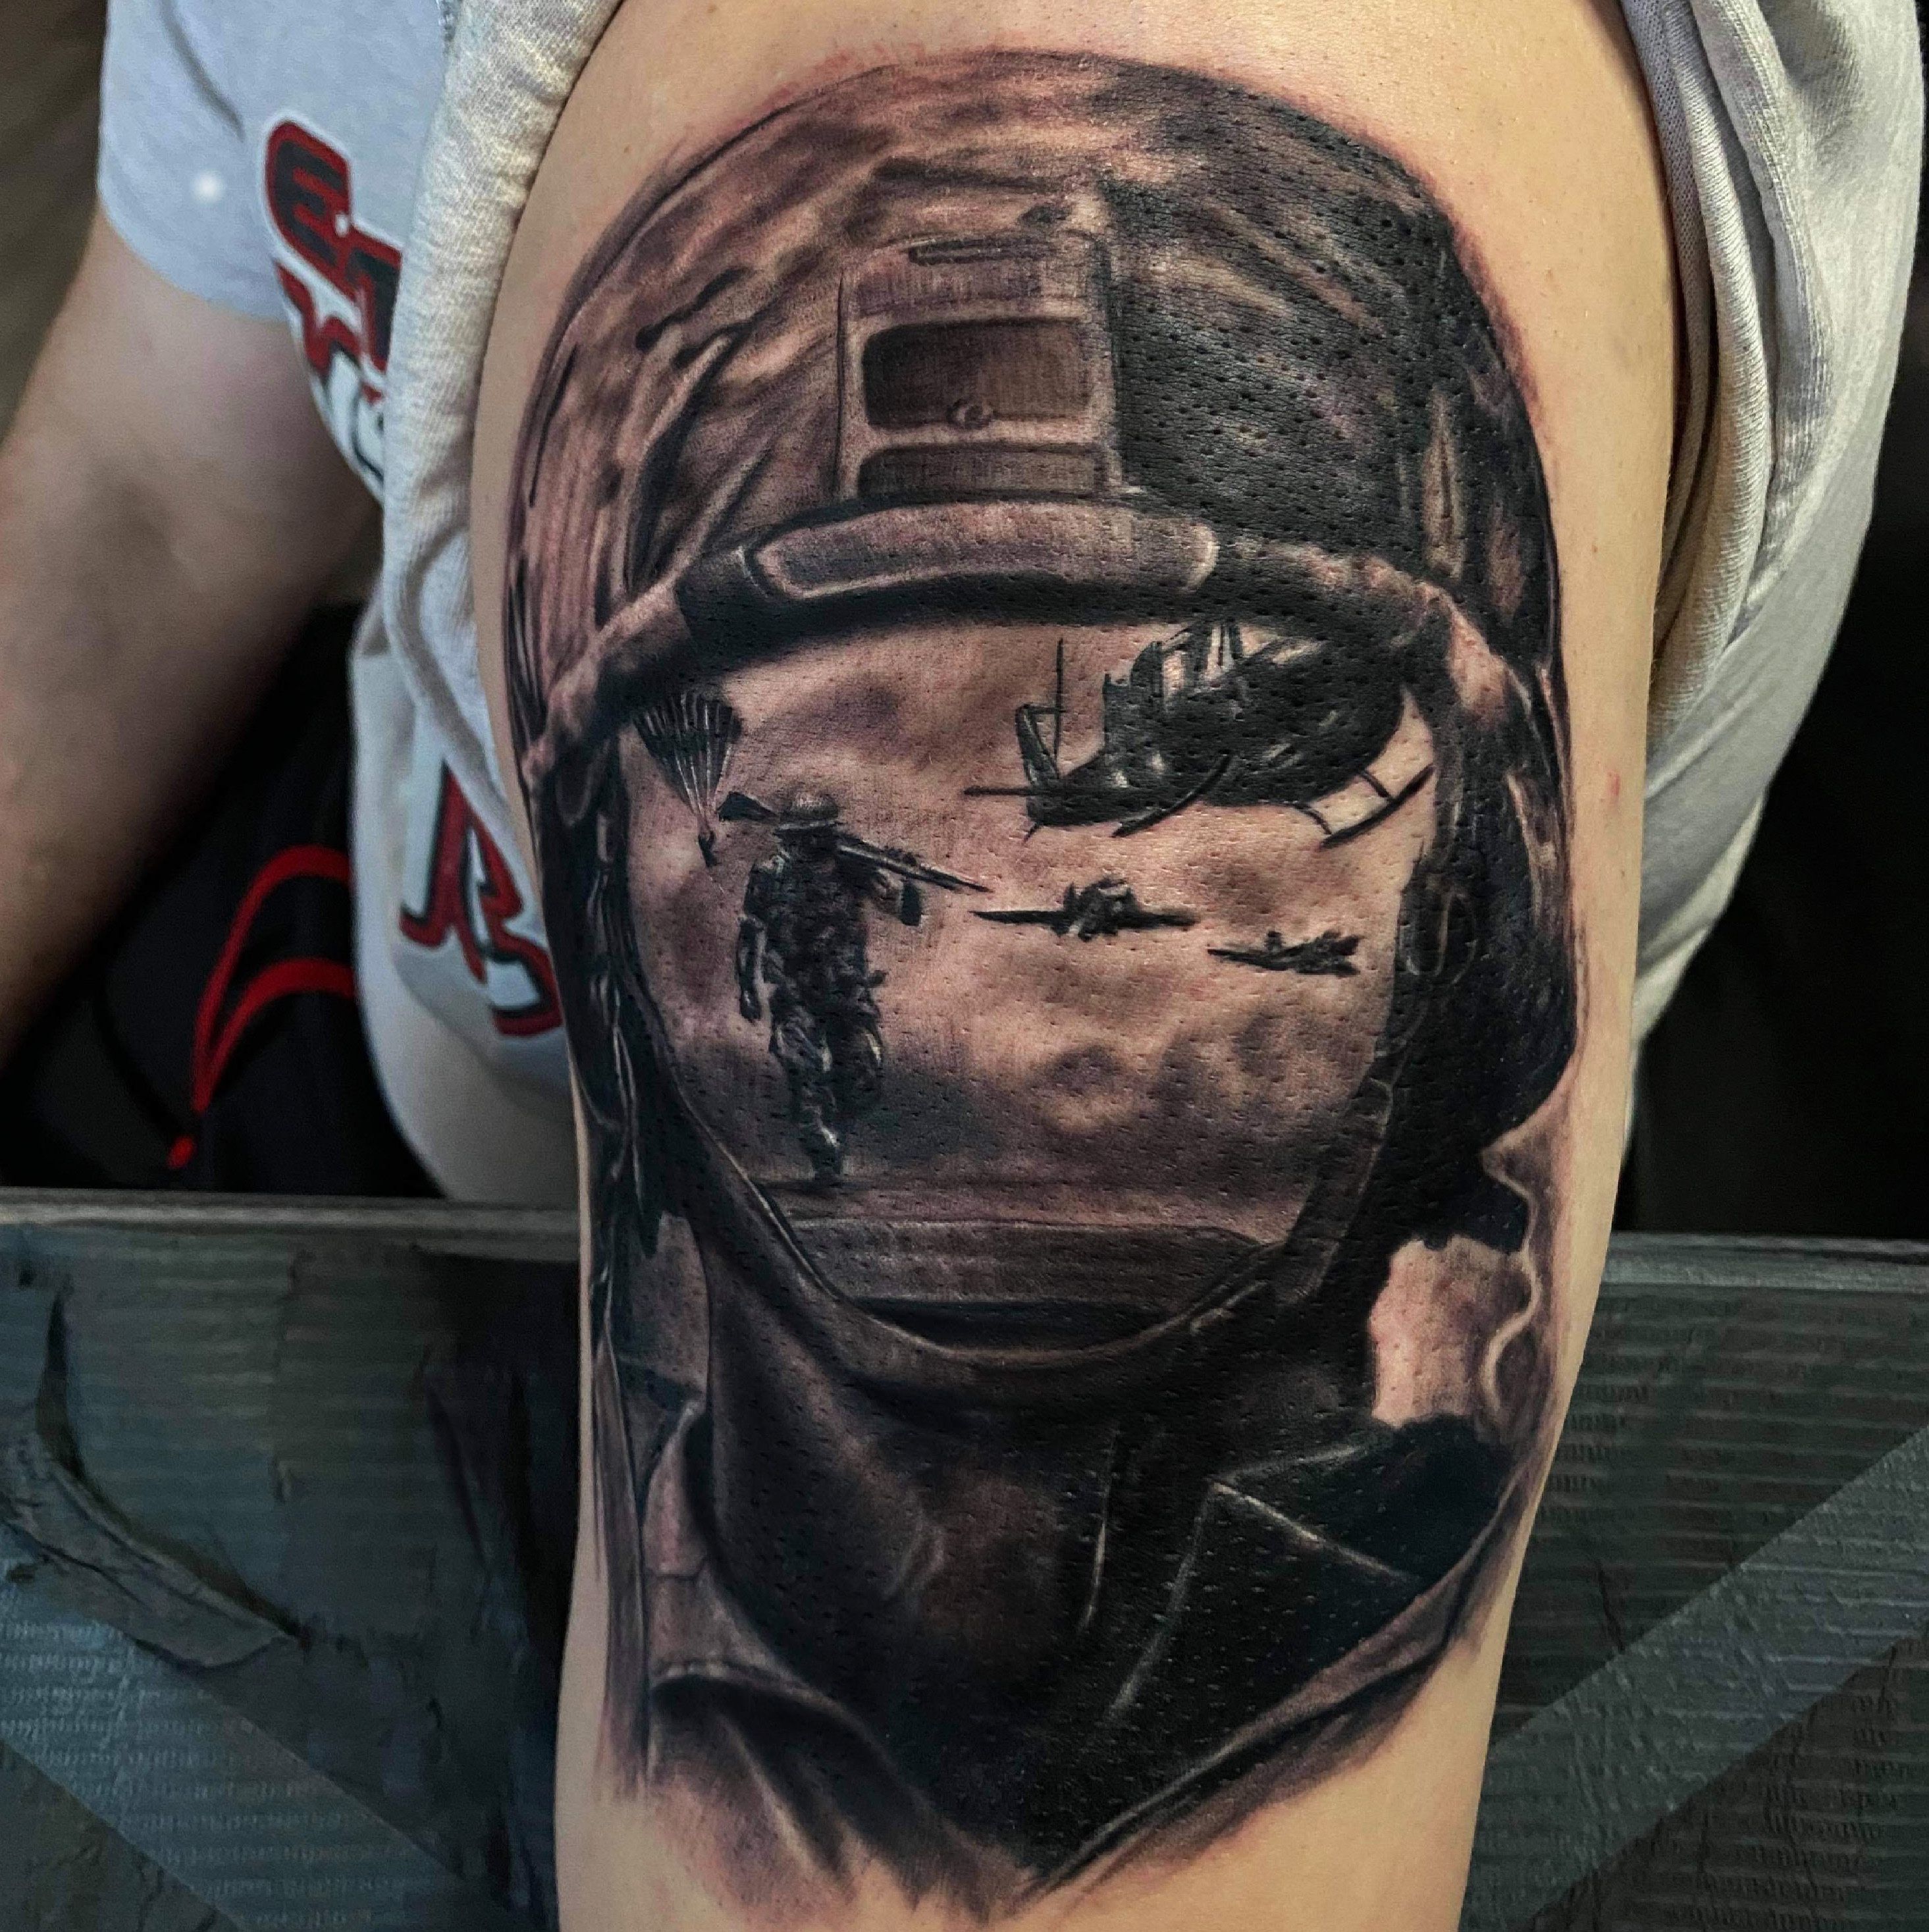 Fallen Soldier by tattooedone on DeviantArt